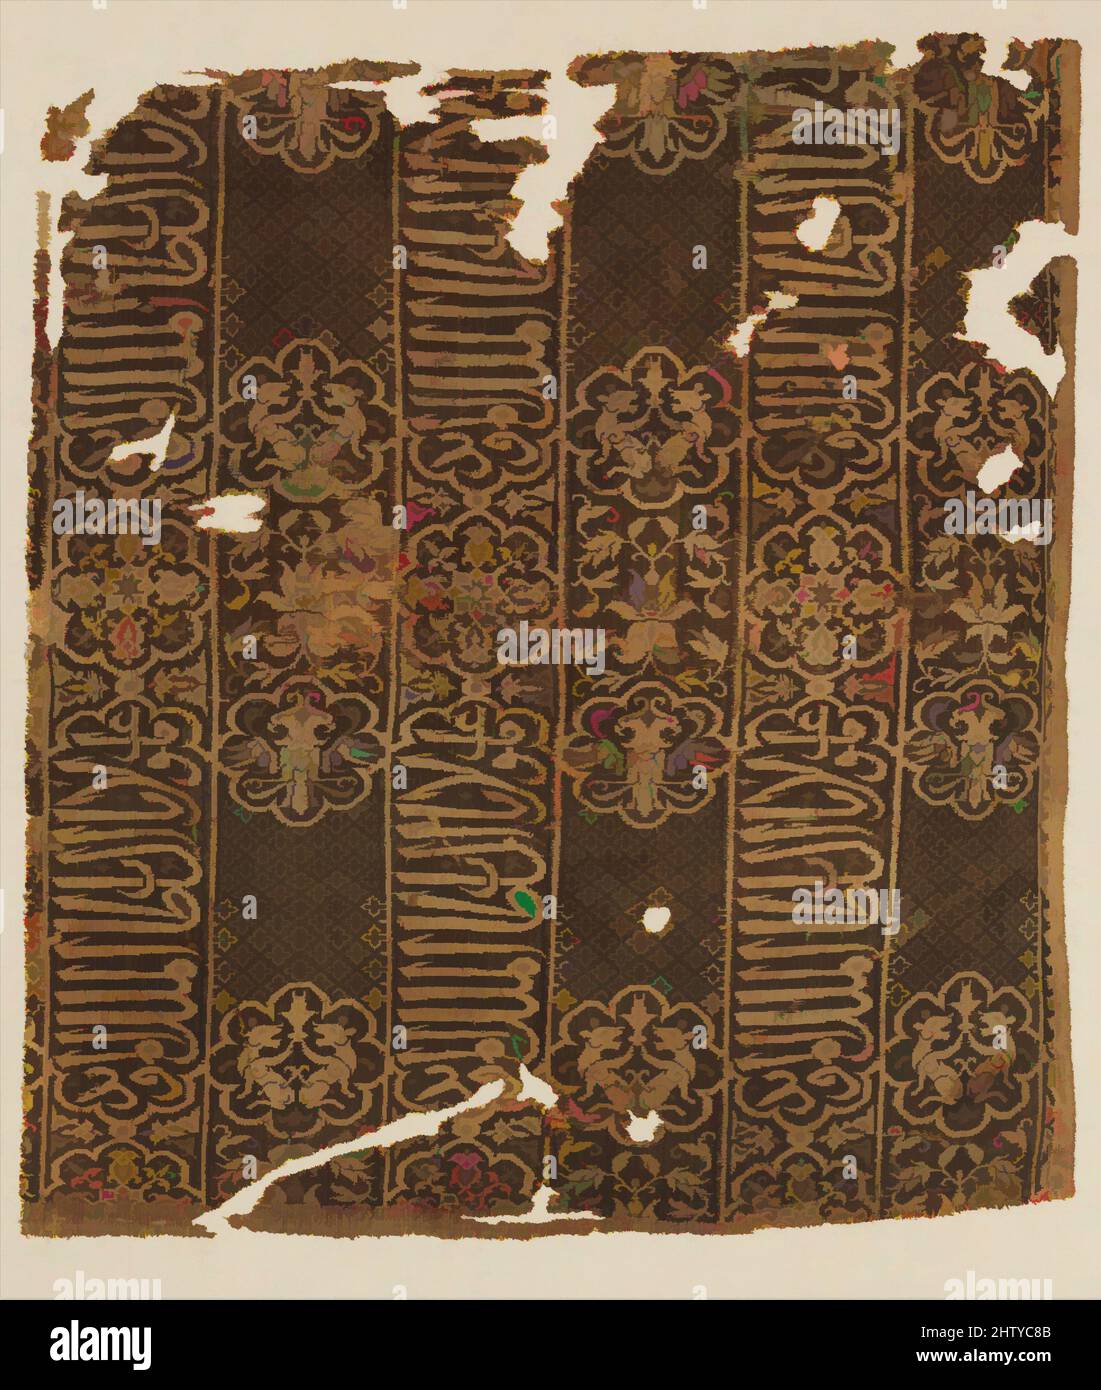 Arte ispirata da frammento di un mantello, inizio 14th secolo, attribuito all'Egitto, seta; doppia tessitura, H. 20 1/4 poll. (51,4 cm), tessuto-tessile, la ripetuta iscrizione araba in thuluth script è tradotta come "Gloria al nostro maestro il Sultan al Malik al Mu’ayyad". Questo probabilmente si riferisce a, opere classiche modernizzate da Artotop con un tuffo di modernità. Forme, colore e valore, impatto visivo accattivante sulle emozioni artistiche attraverso la libertà delle opere d'arte in modo contemporaneo. Un messaggio senza tempo che persegue una nuova direzione selvaggiamente creativa. Artisti che si rivolgono al supporto digitale e creano l'NFT Artotop Foto Stock